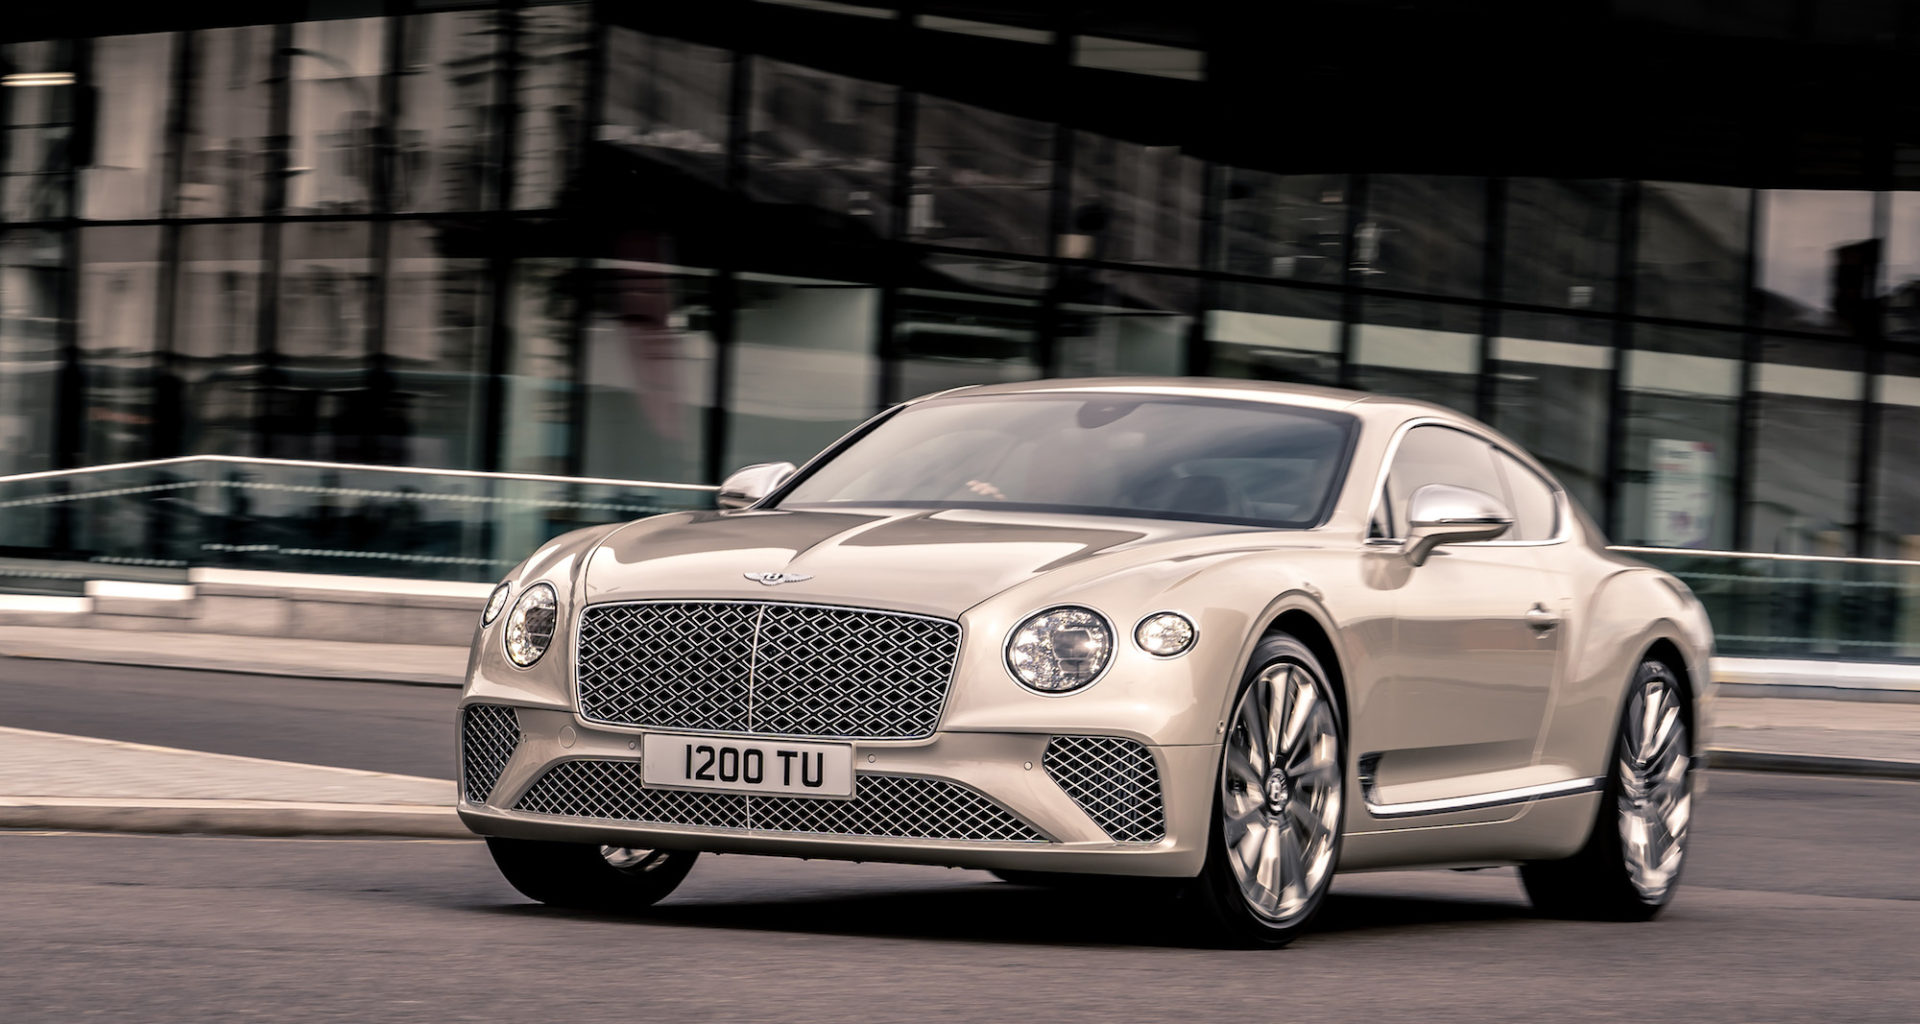 Découvrez la Bentley Continental GT Mulliner le coupé ultime ! Le